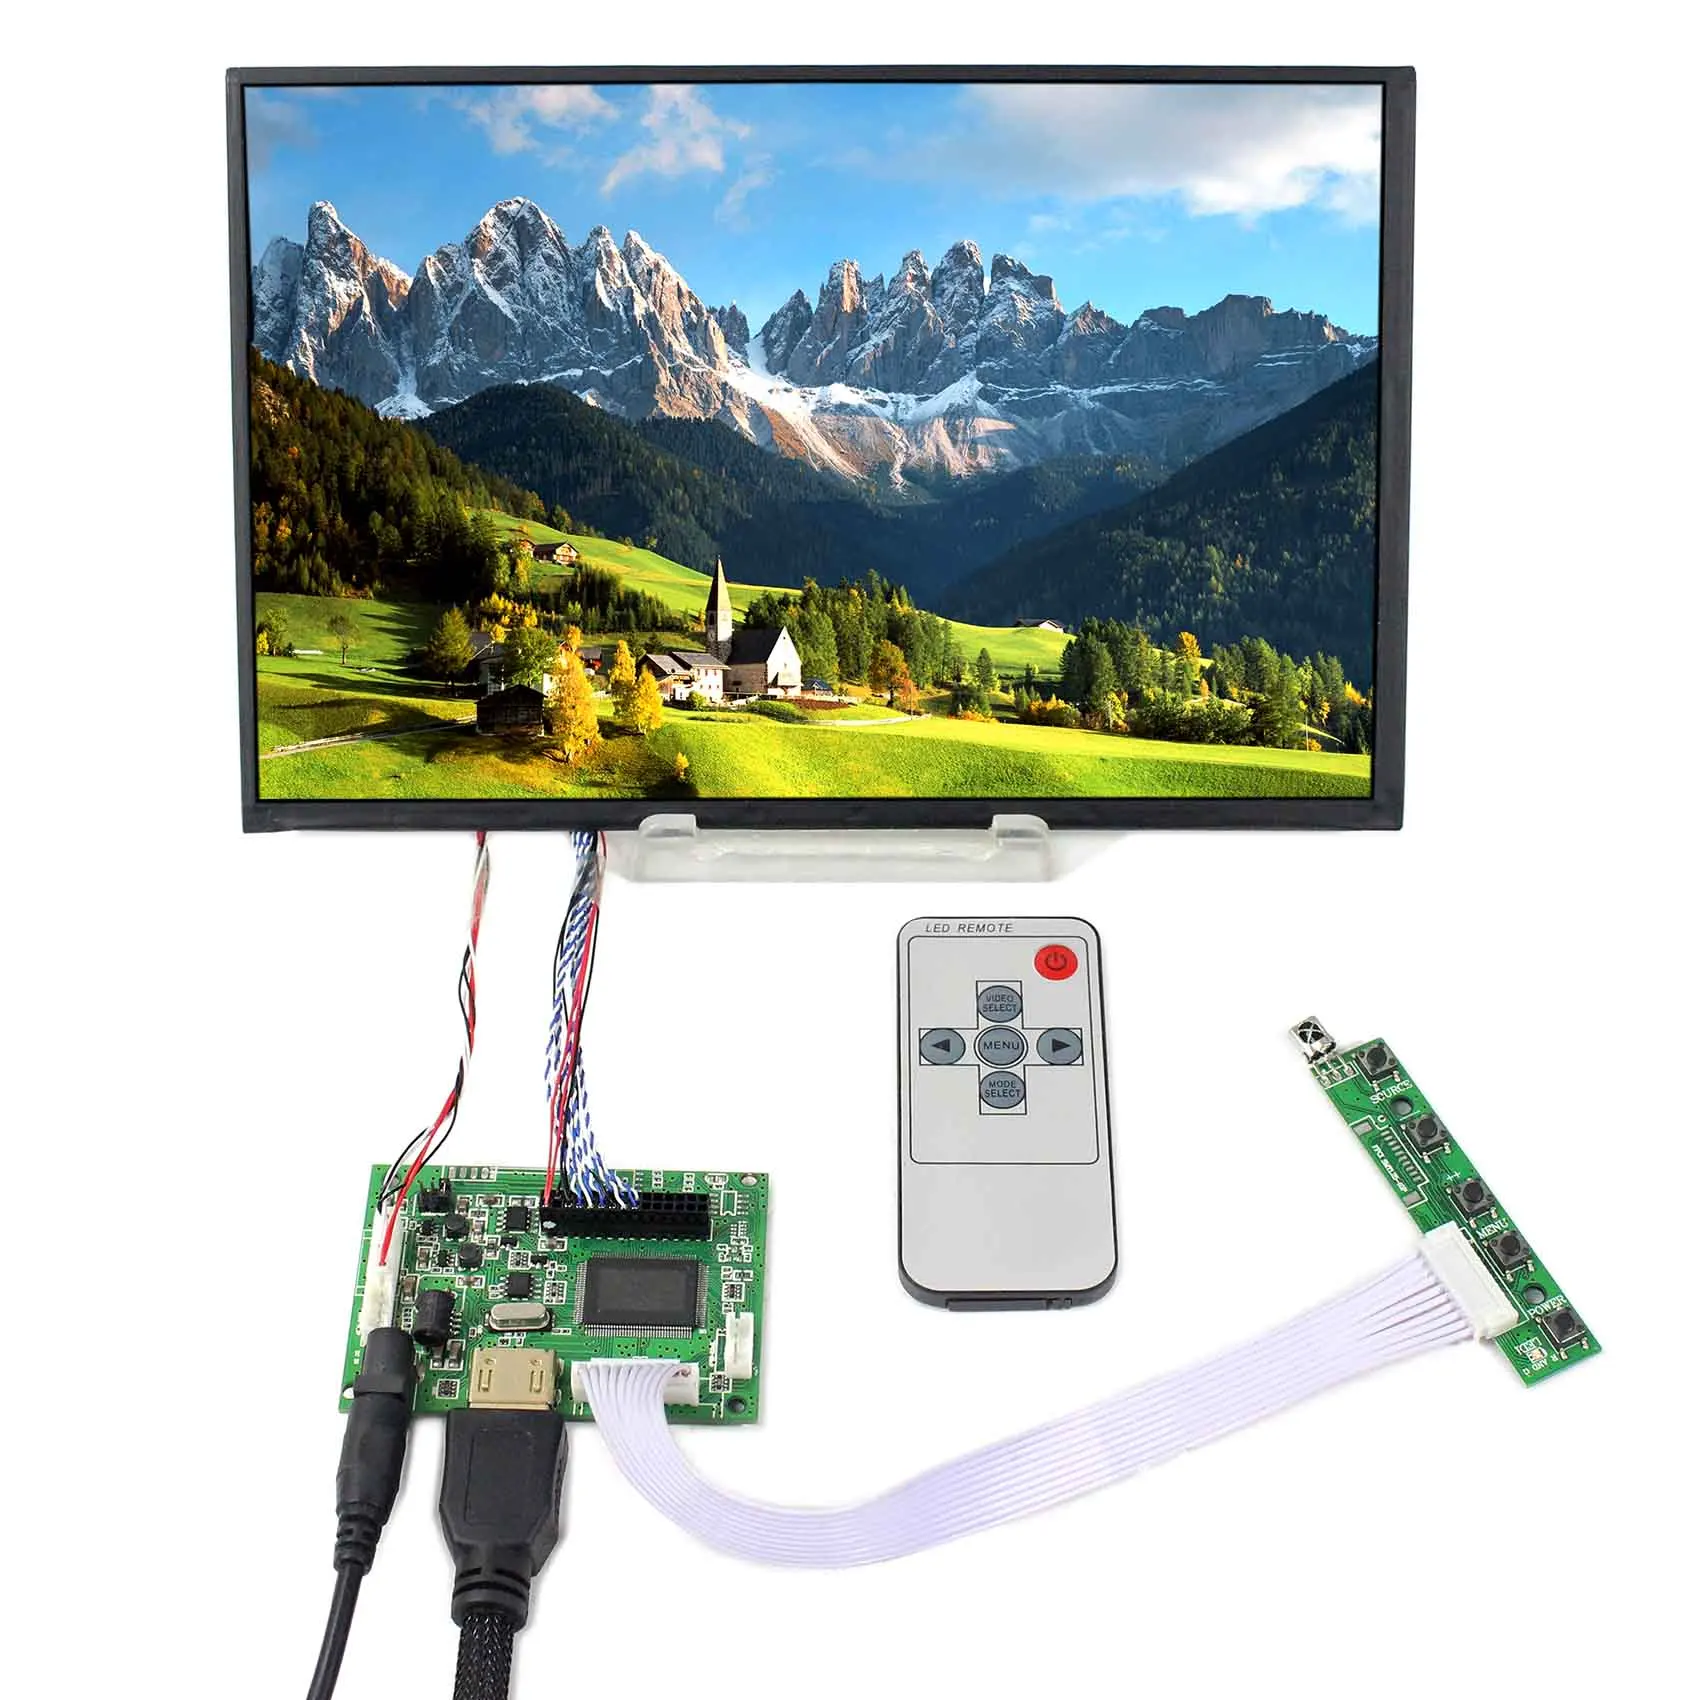 HD MI LCD Board Work with 10.1